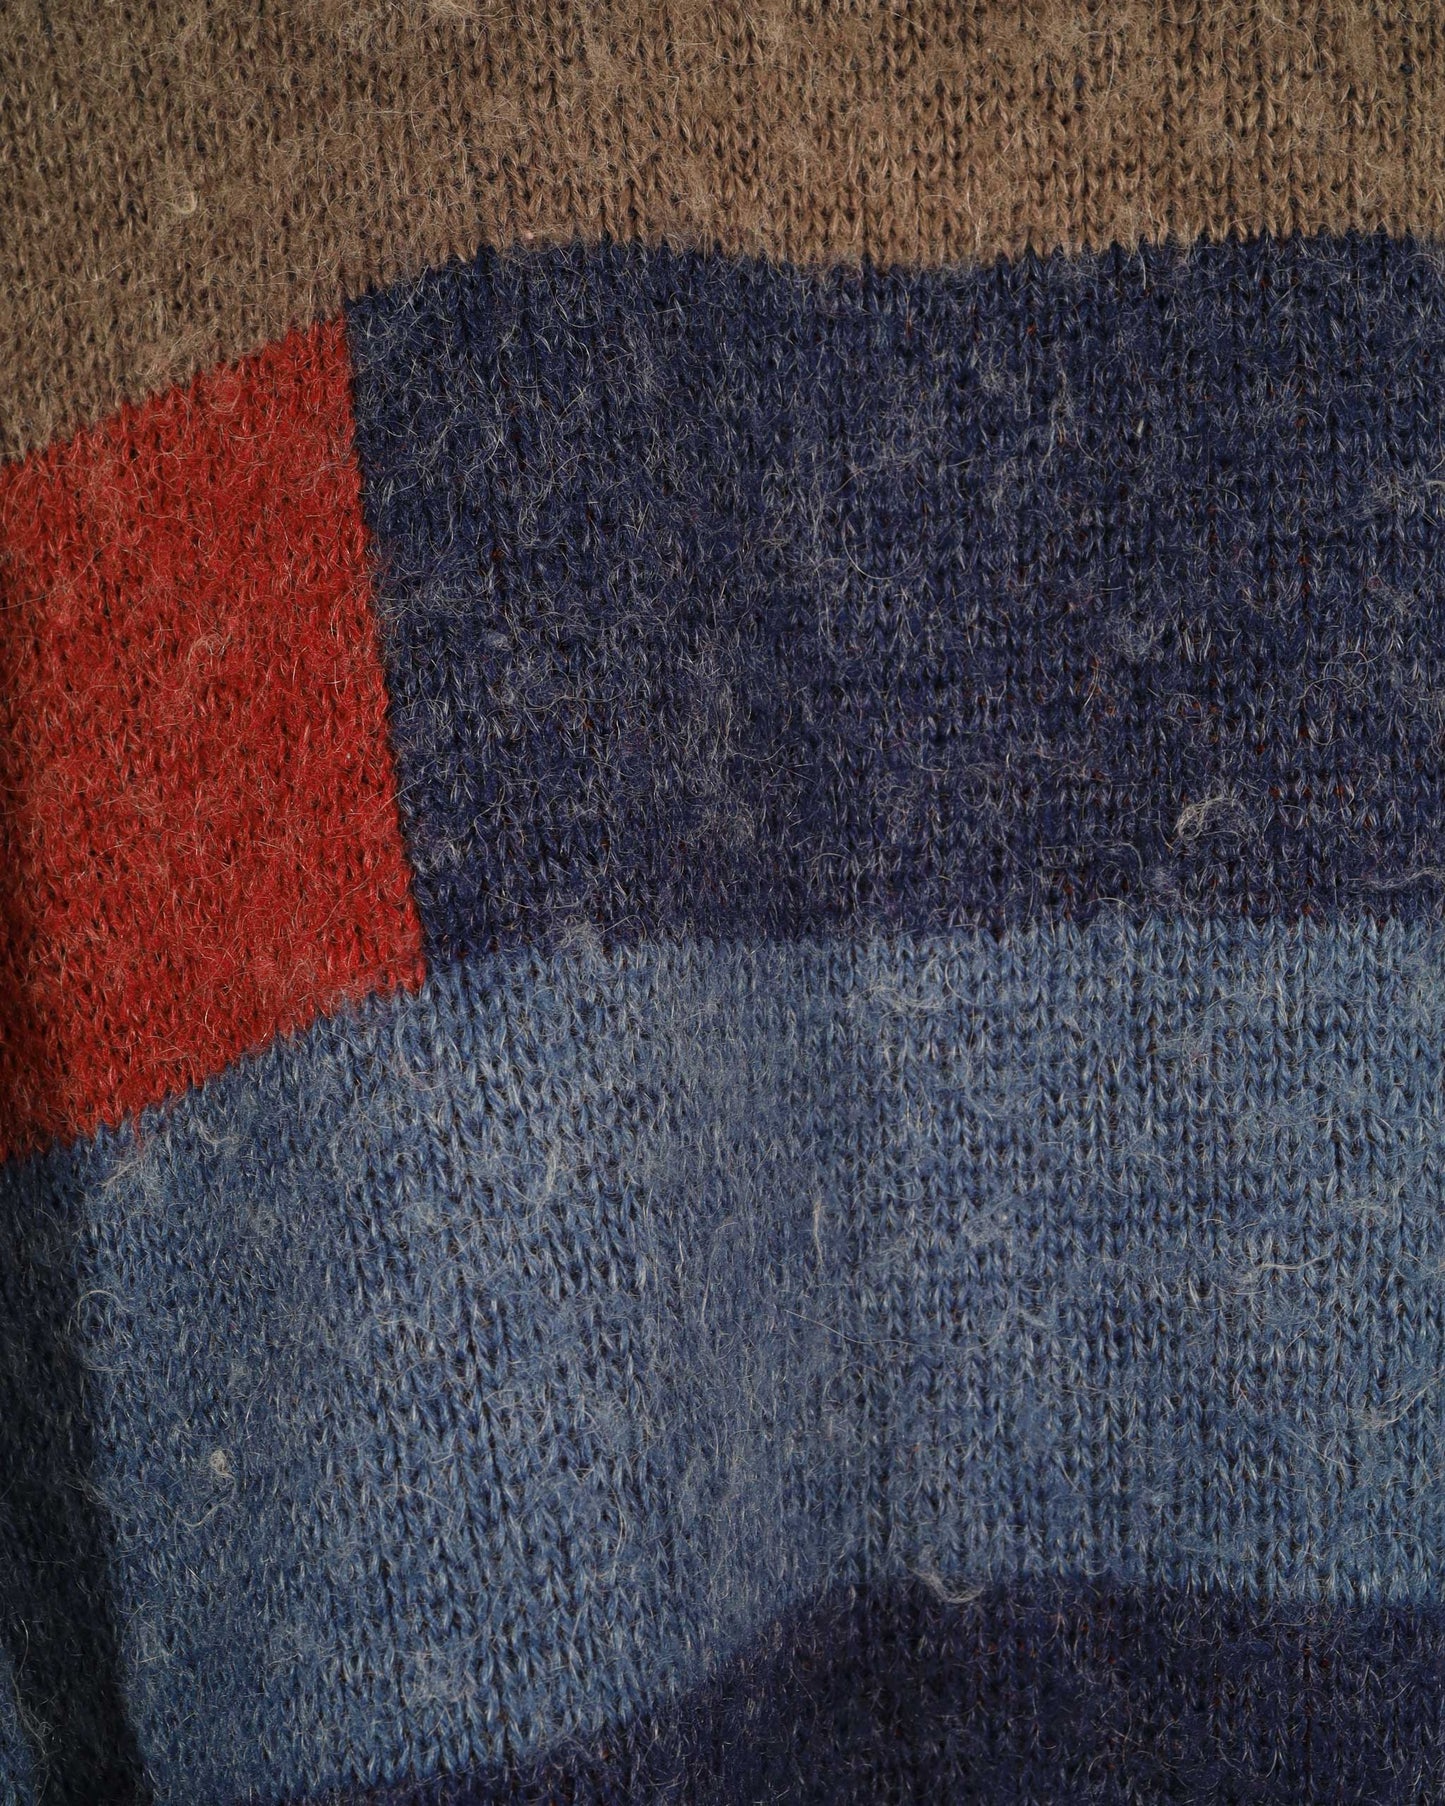 Vintage Patterned Knit Wool Jumper